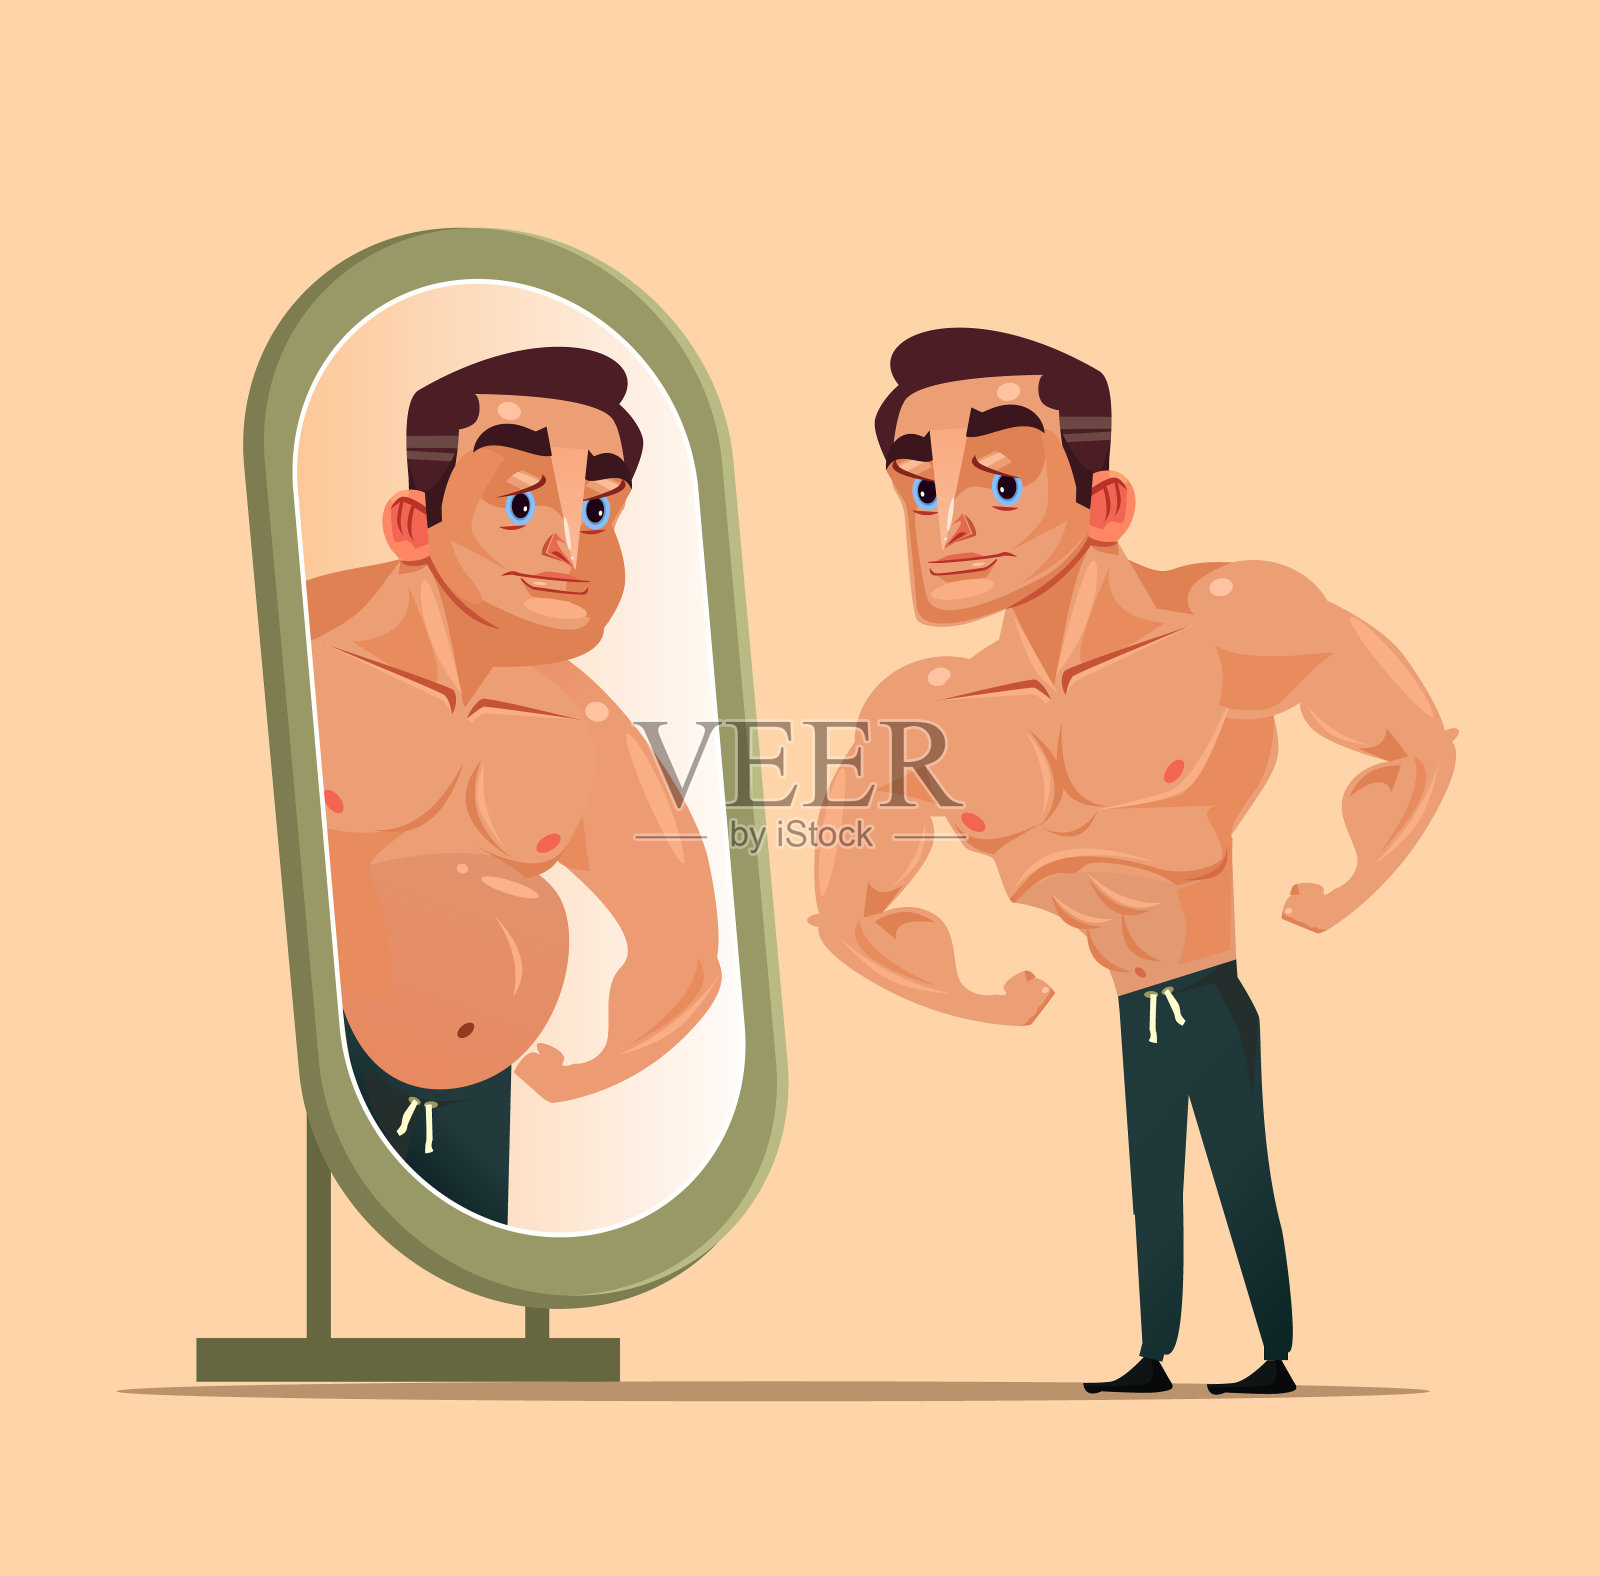 英俊强壮的男人性格照镜子，把自己看成胖子。低估改造锻炼自己和痴迷假装的概念。矢量平面卡通孤立的插图插画图片素材